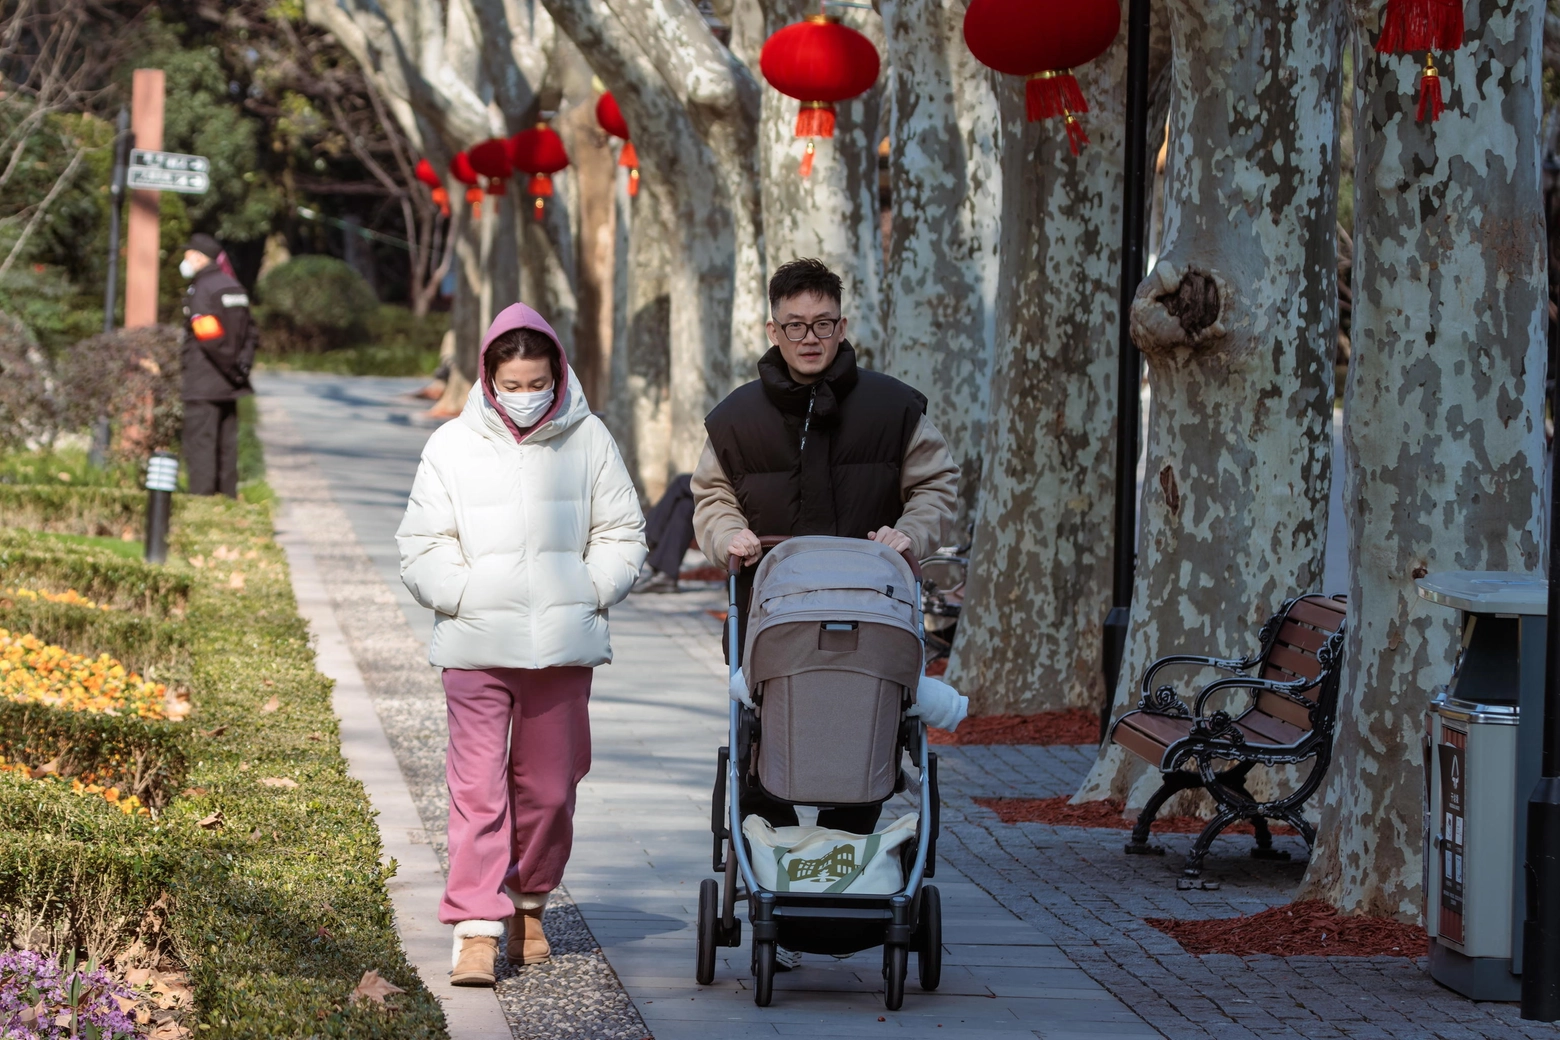 Famiglia cinese a Shanghai, 17 gennaio 2023 (Epa)